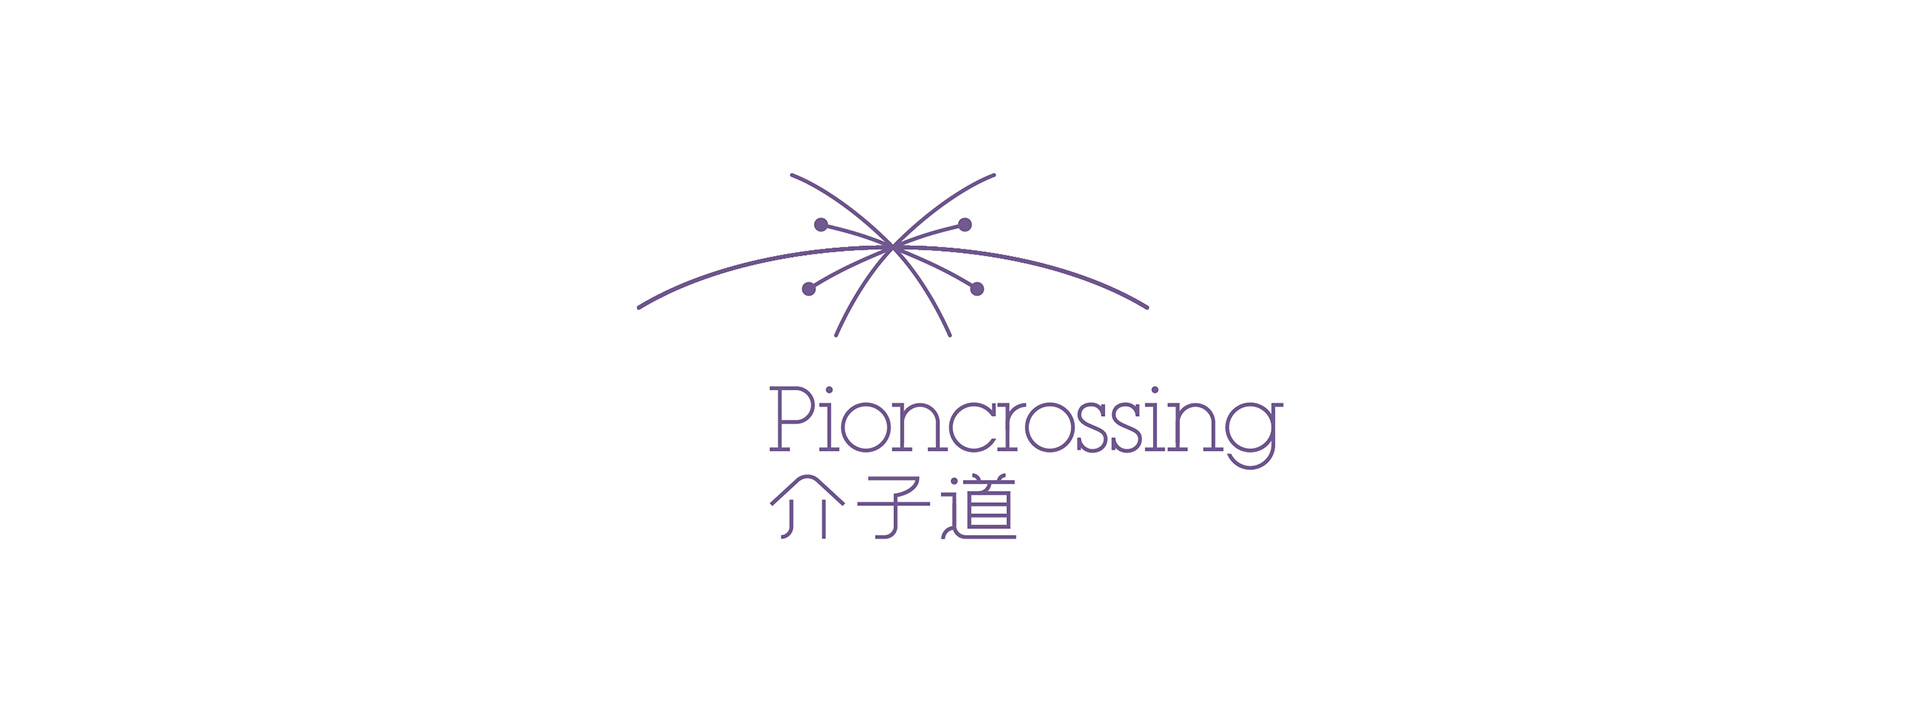 Pioncrossing_-02.jpg